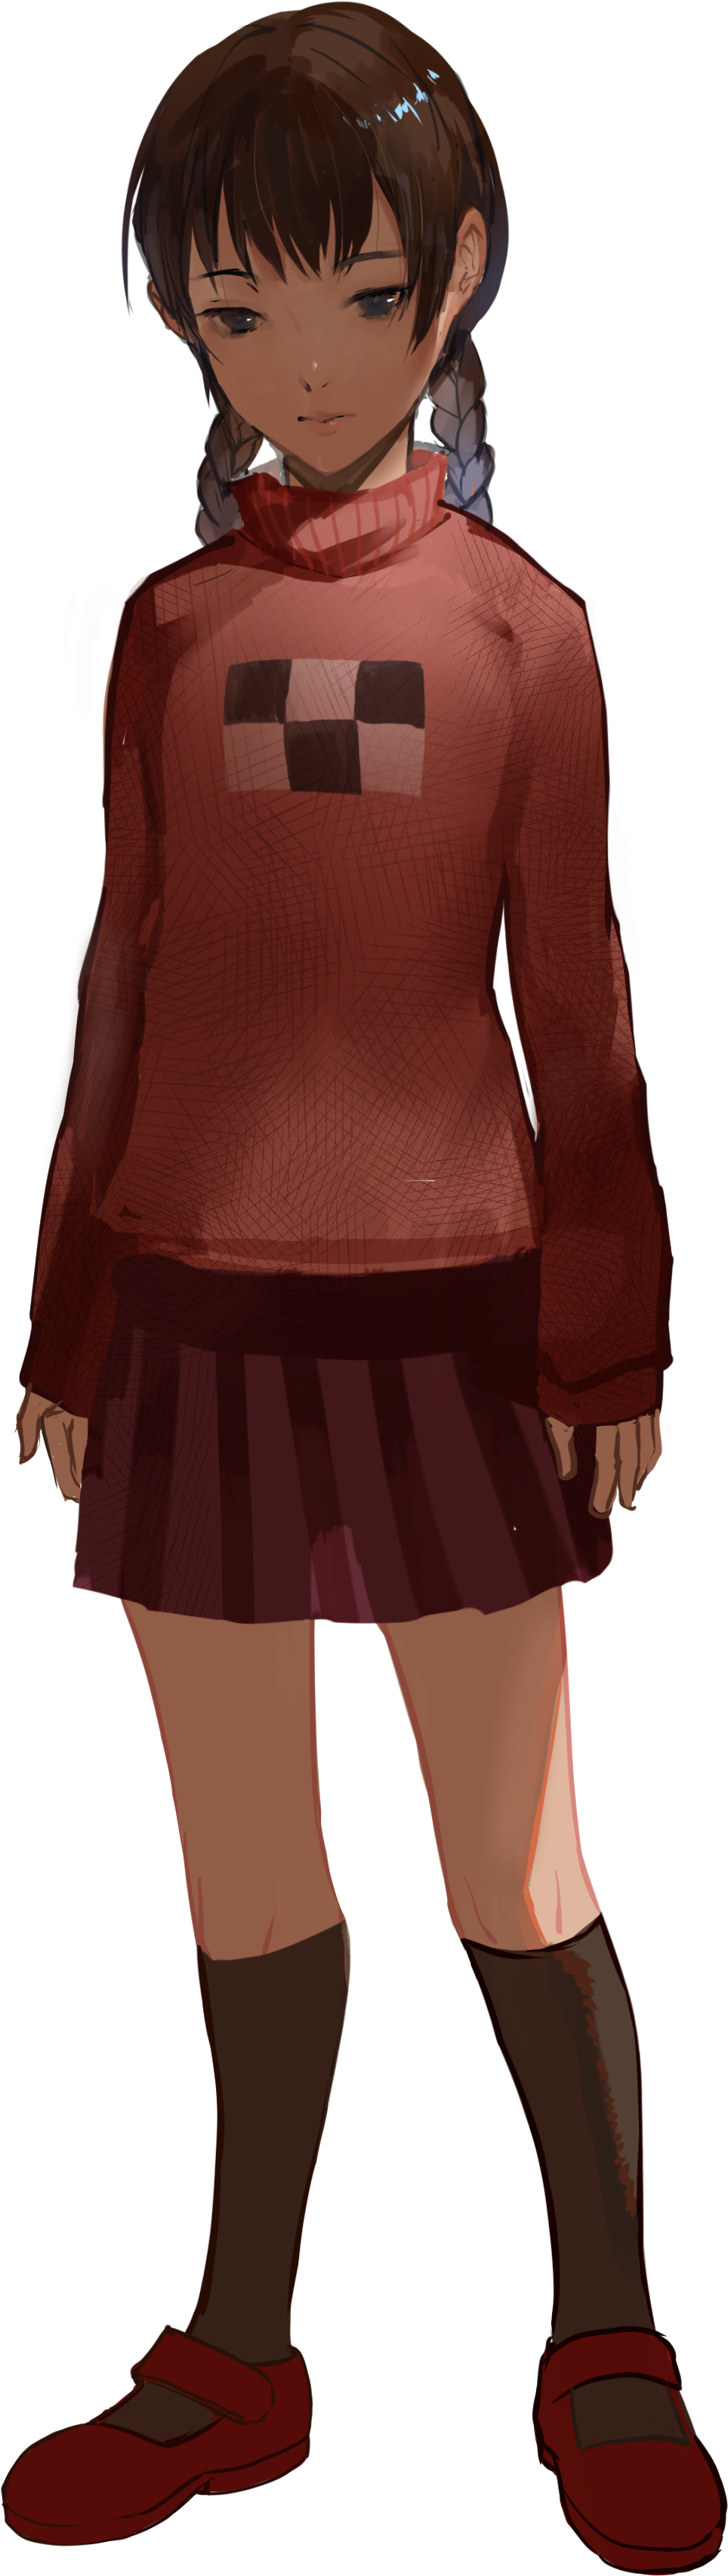 Anime Girlin Red Sweaterand Skirt